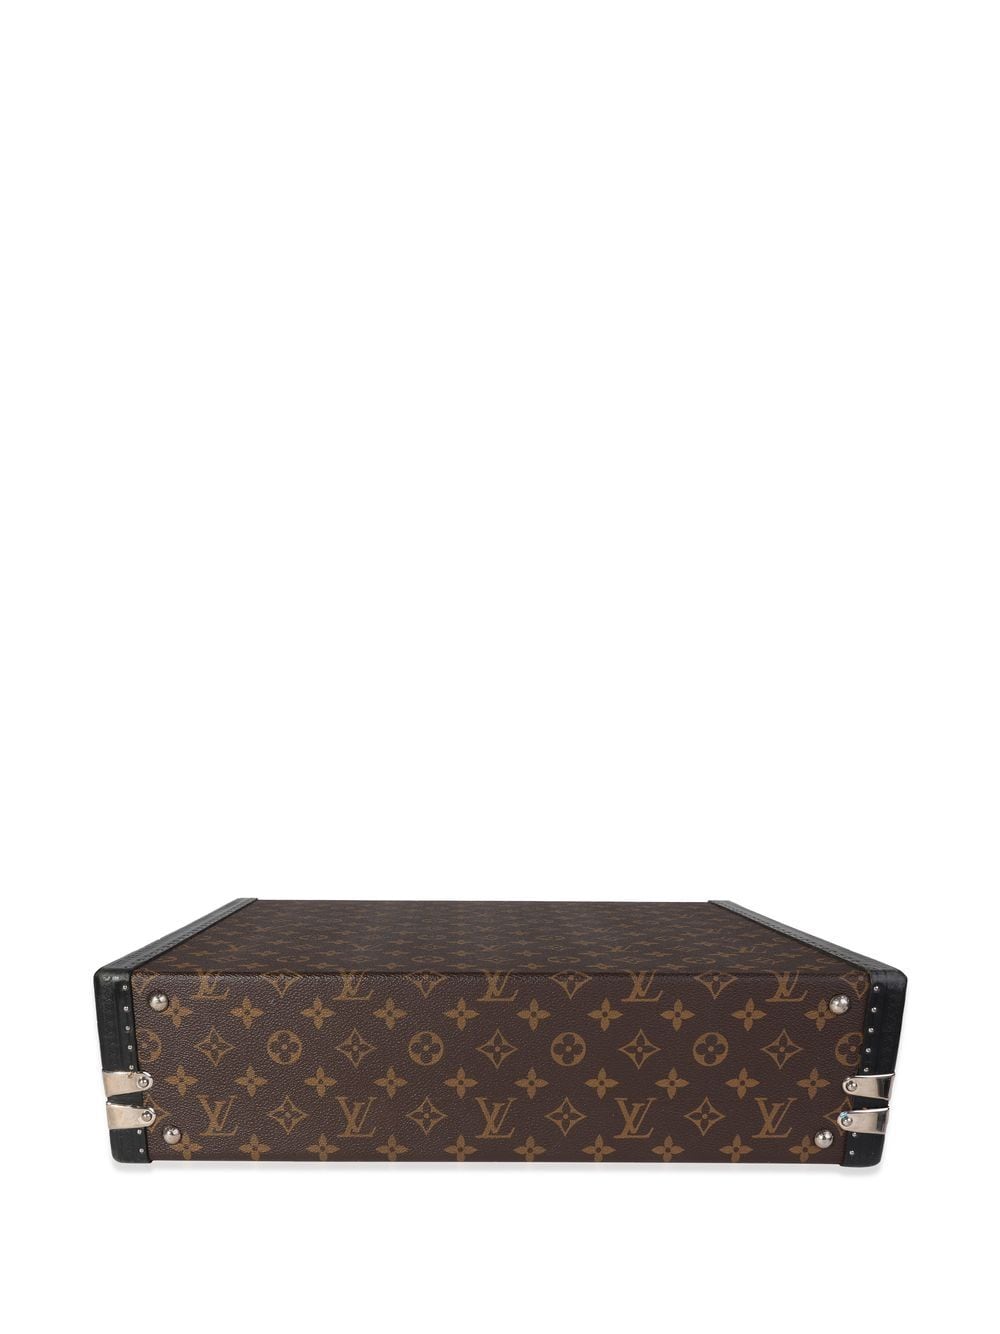 Louis Vuitton Monogram Macassar President Briefcase